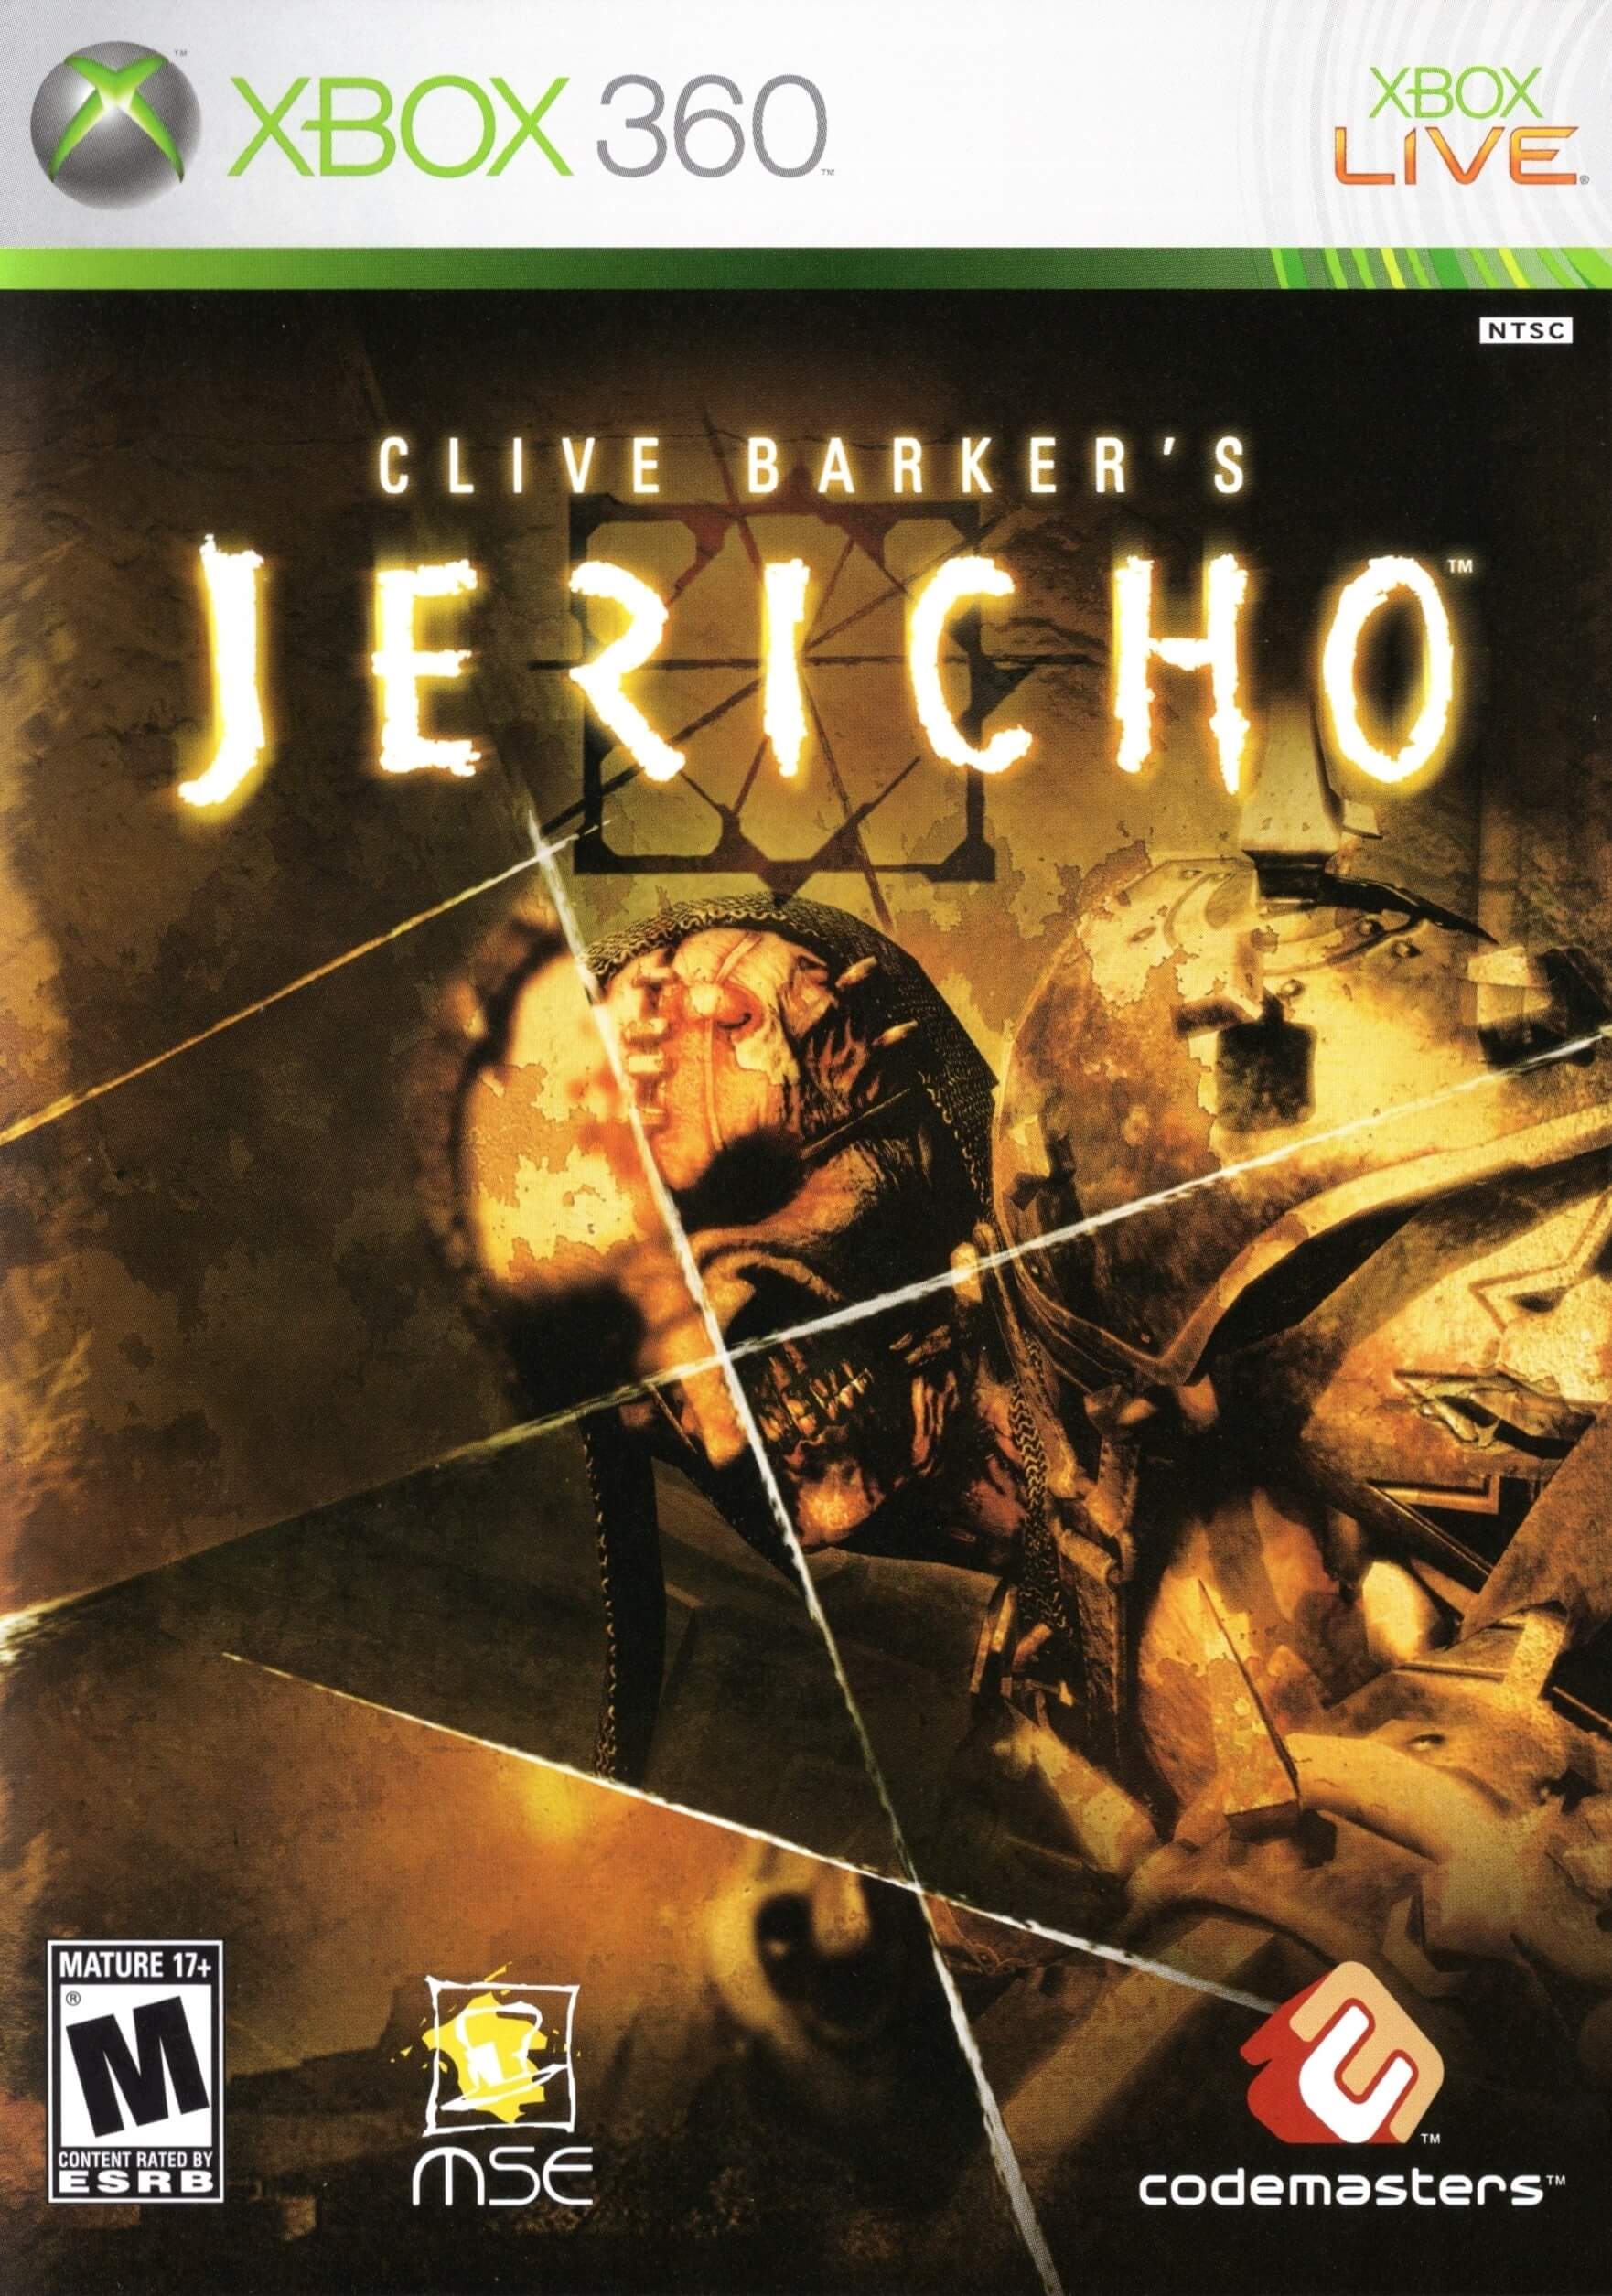 Clive Barker’s Jericho